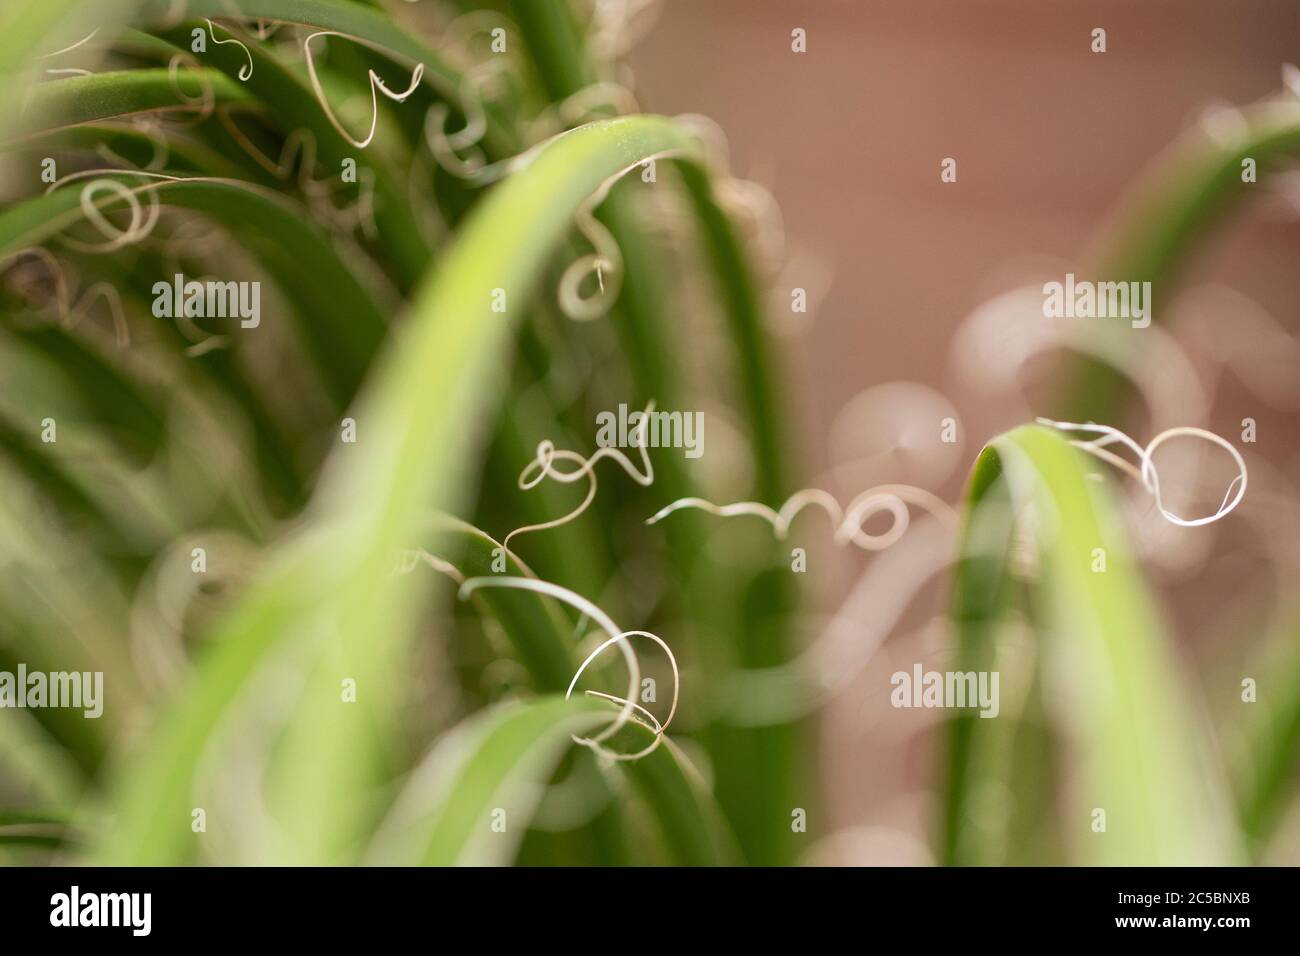 Ein Makrofoto von lockigen Fäden, die auf einer Zwillingsblume Agave Pflanze (Agave geminiflora) wachsen, die in Mexiko beheimatet ist. Stockfoto